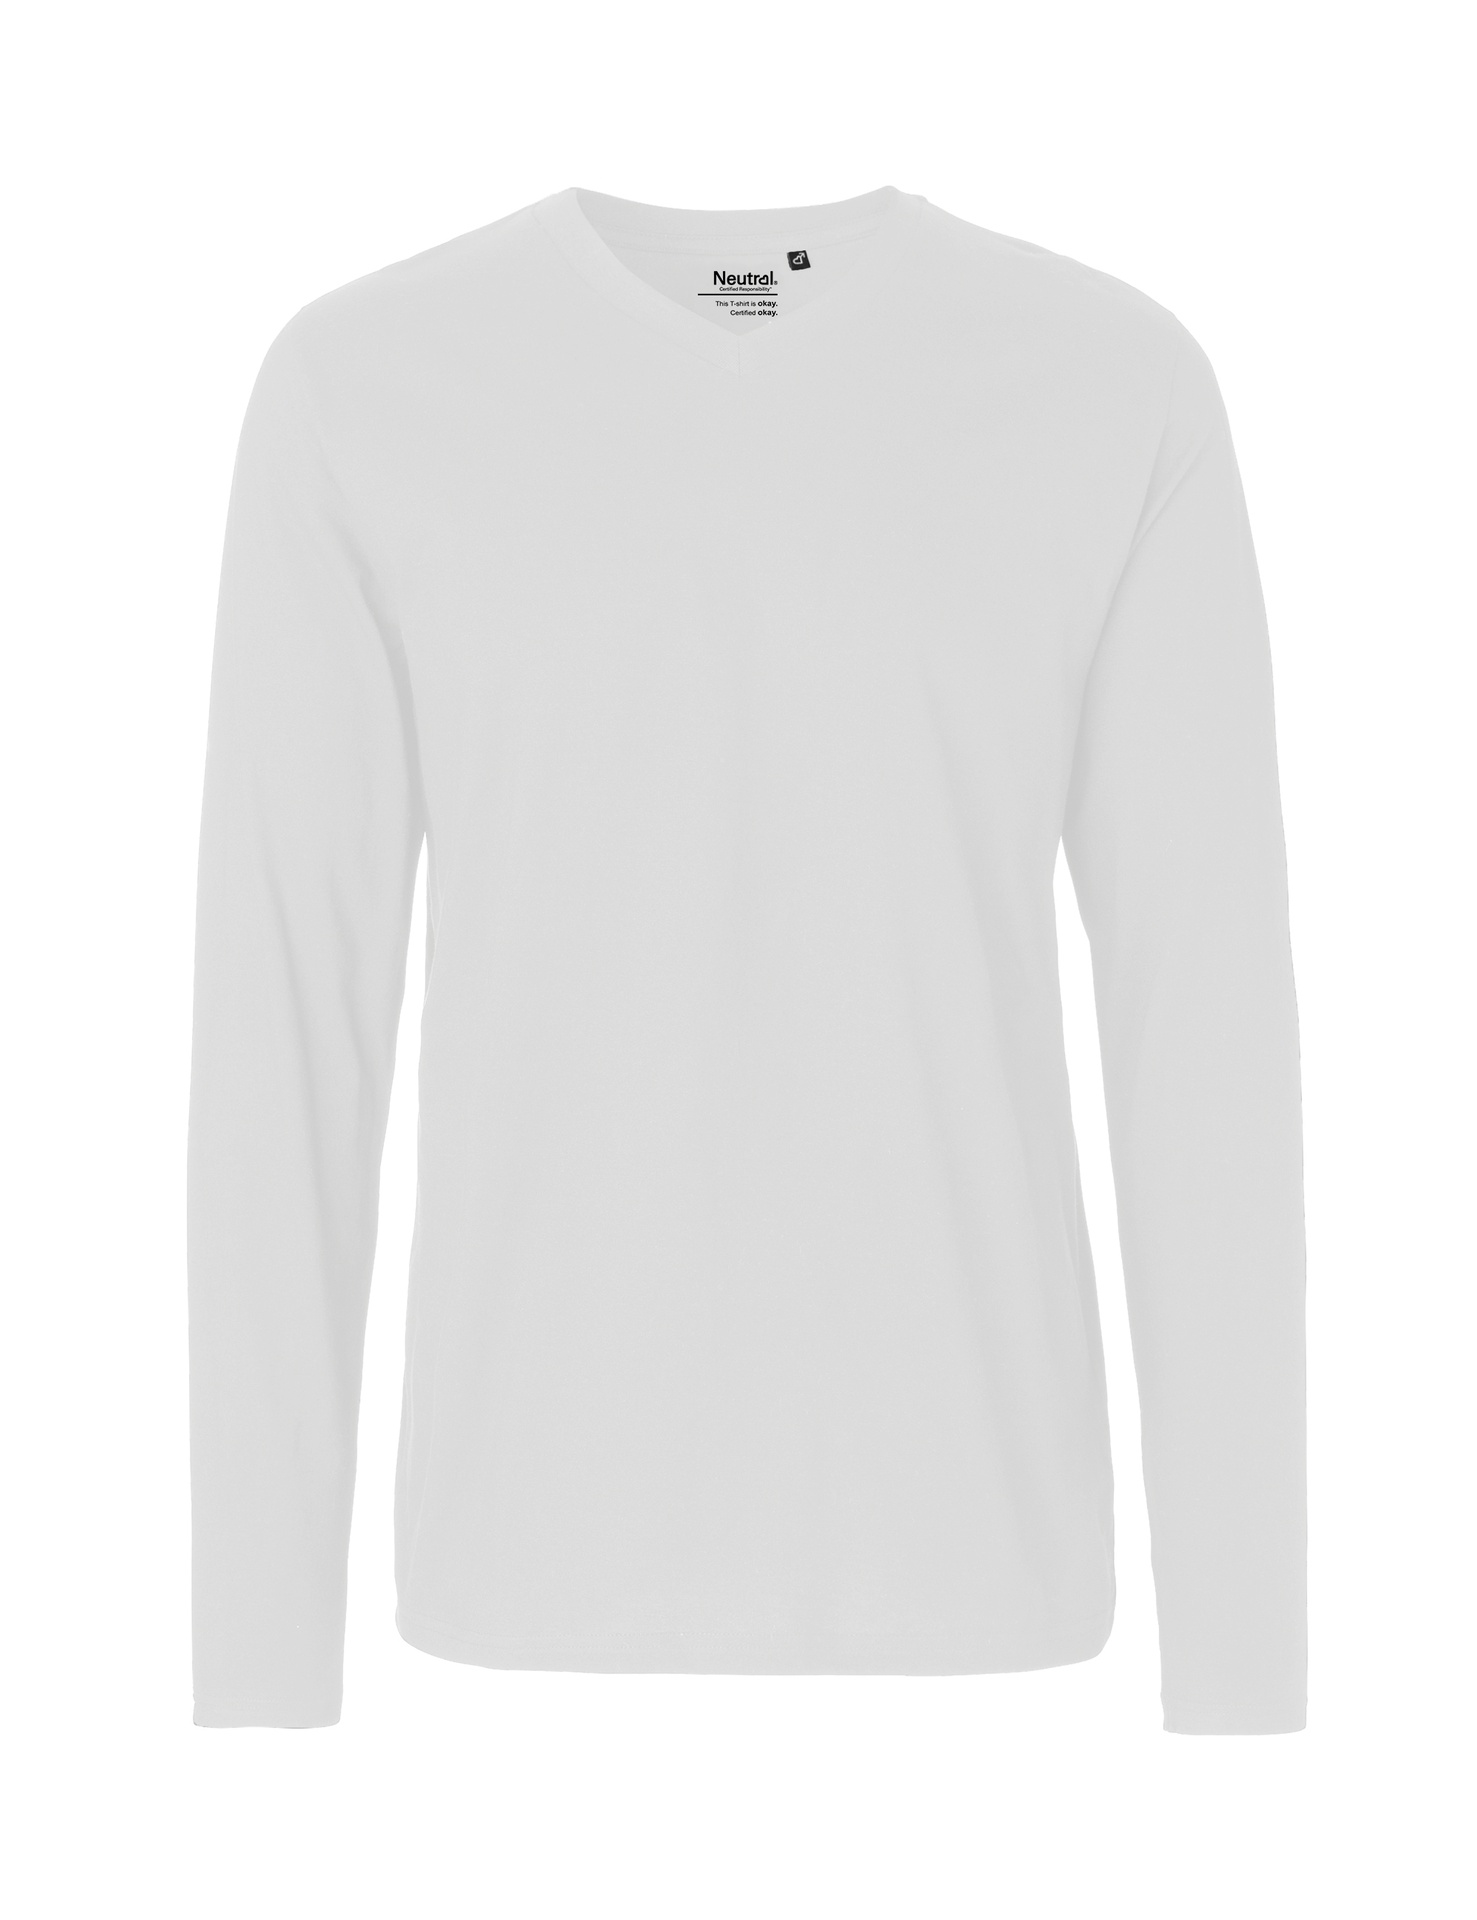 [PR/02477] Mens Long Sleeve V-Neck T-Shirt (White 01, XS)